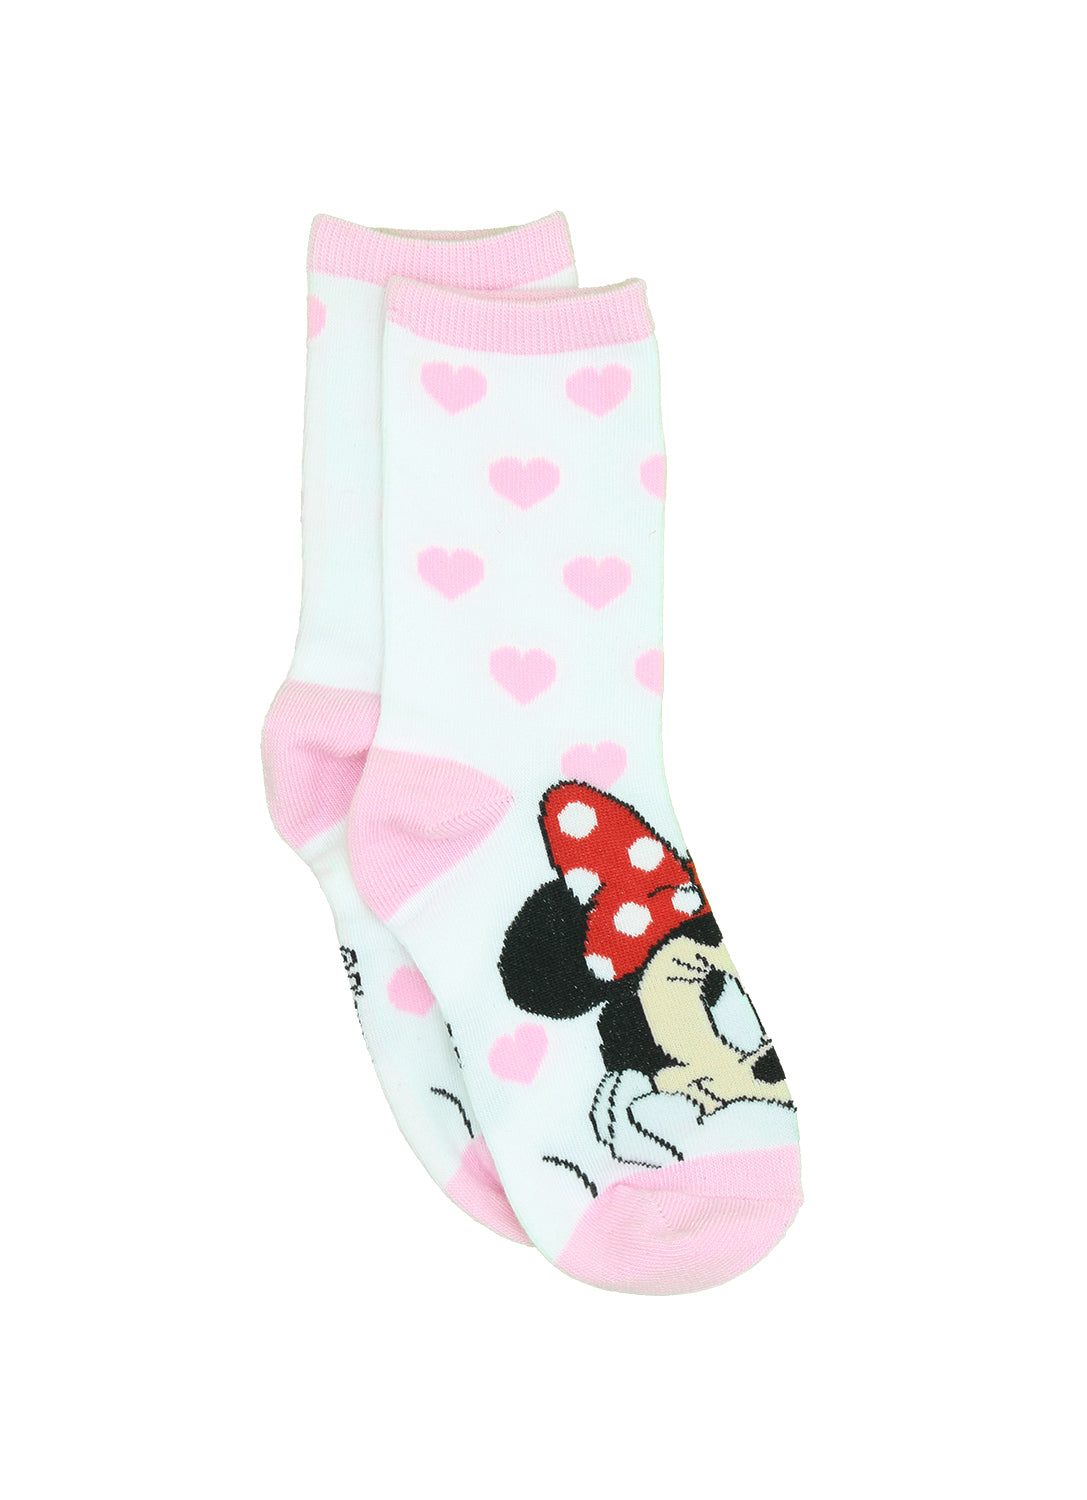 Chaussettes pour filles Minnie Mouse classiques - Paquet de 6 